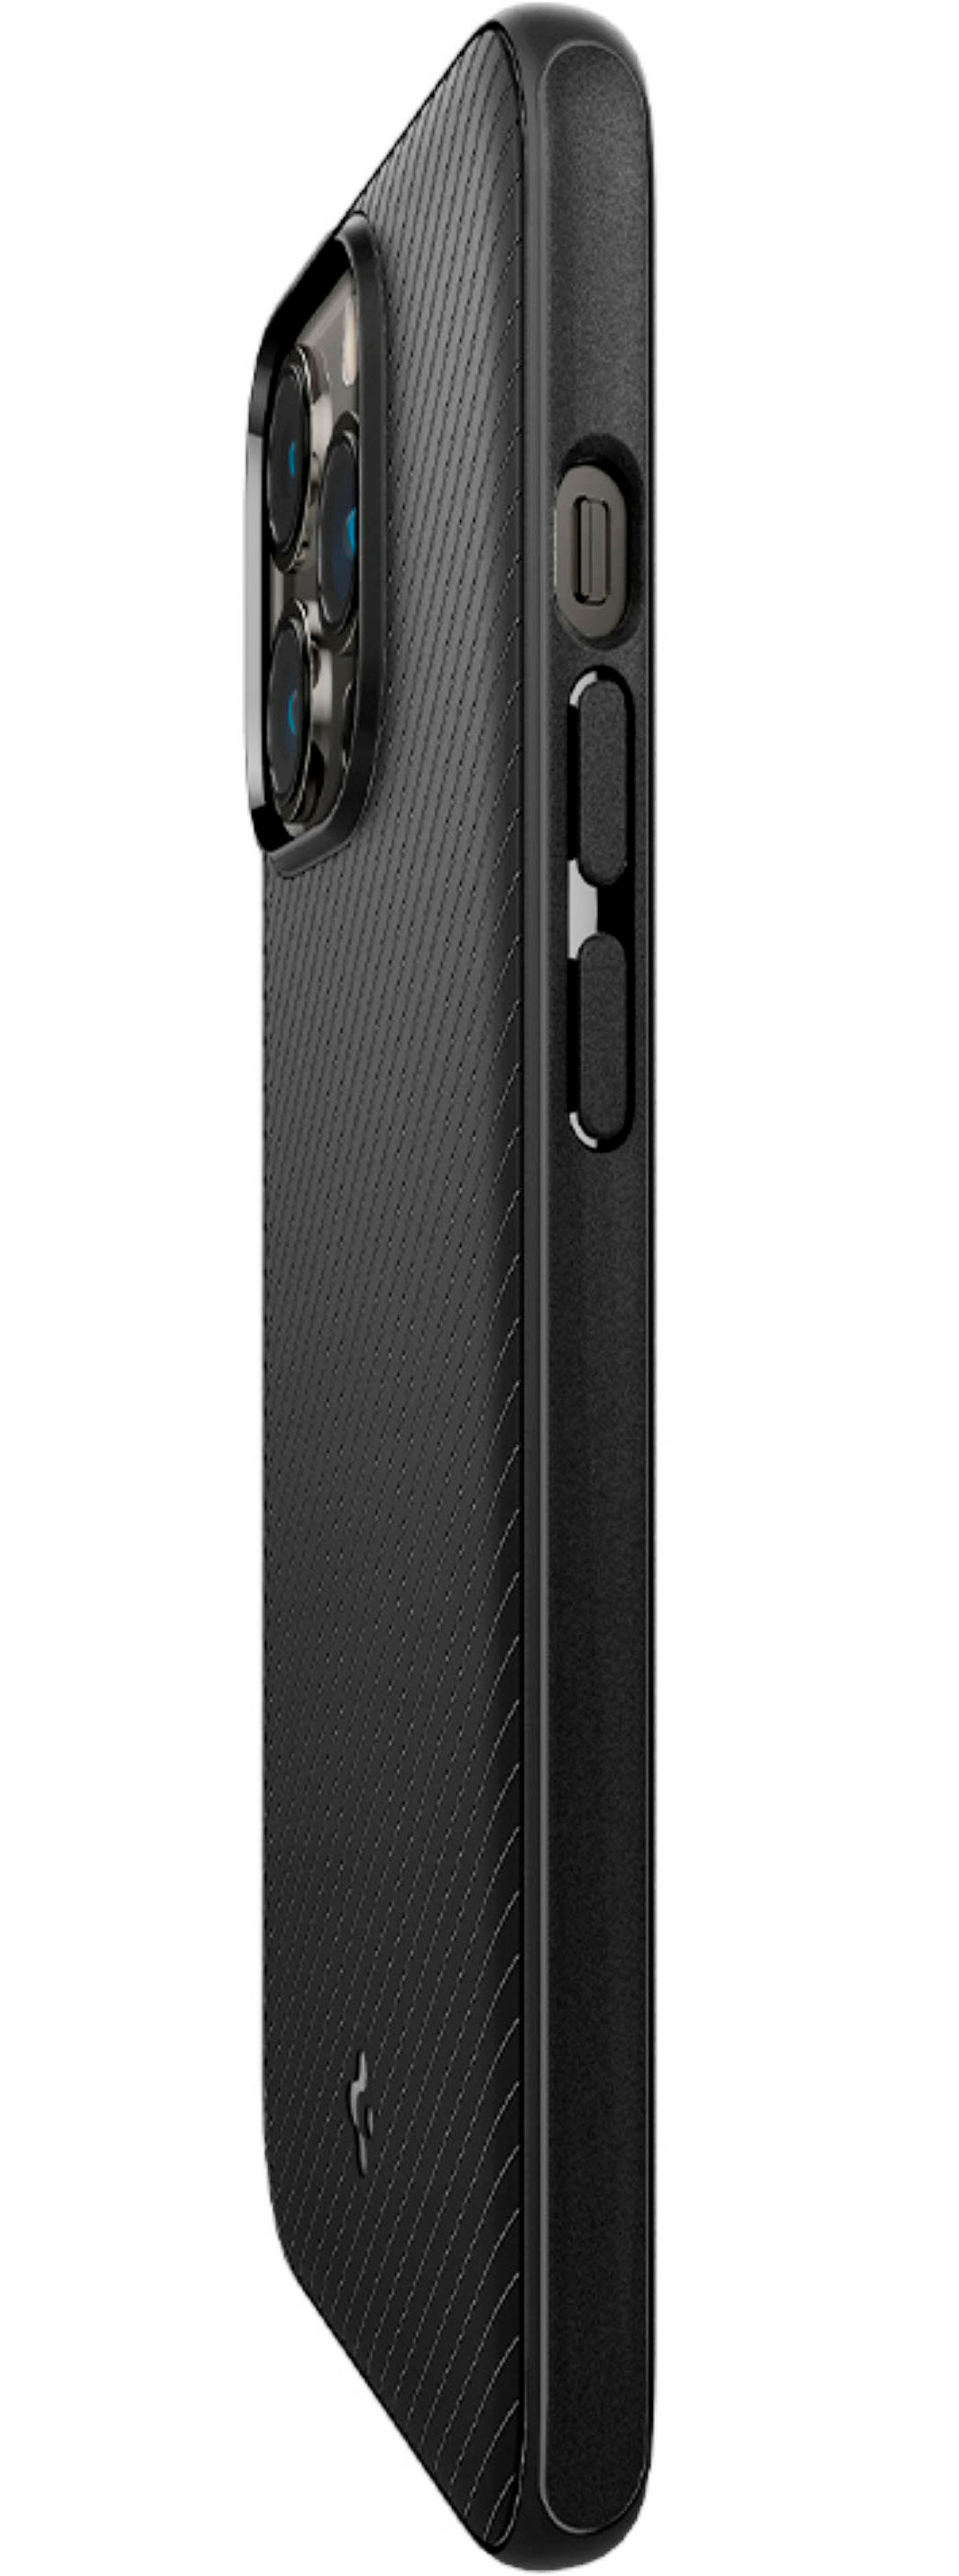 iPhone 14 Pro Case Mag Armor (MagFit) - Spigen Official Site